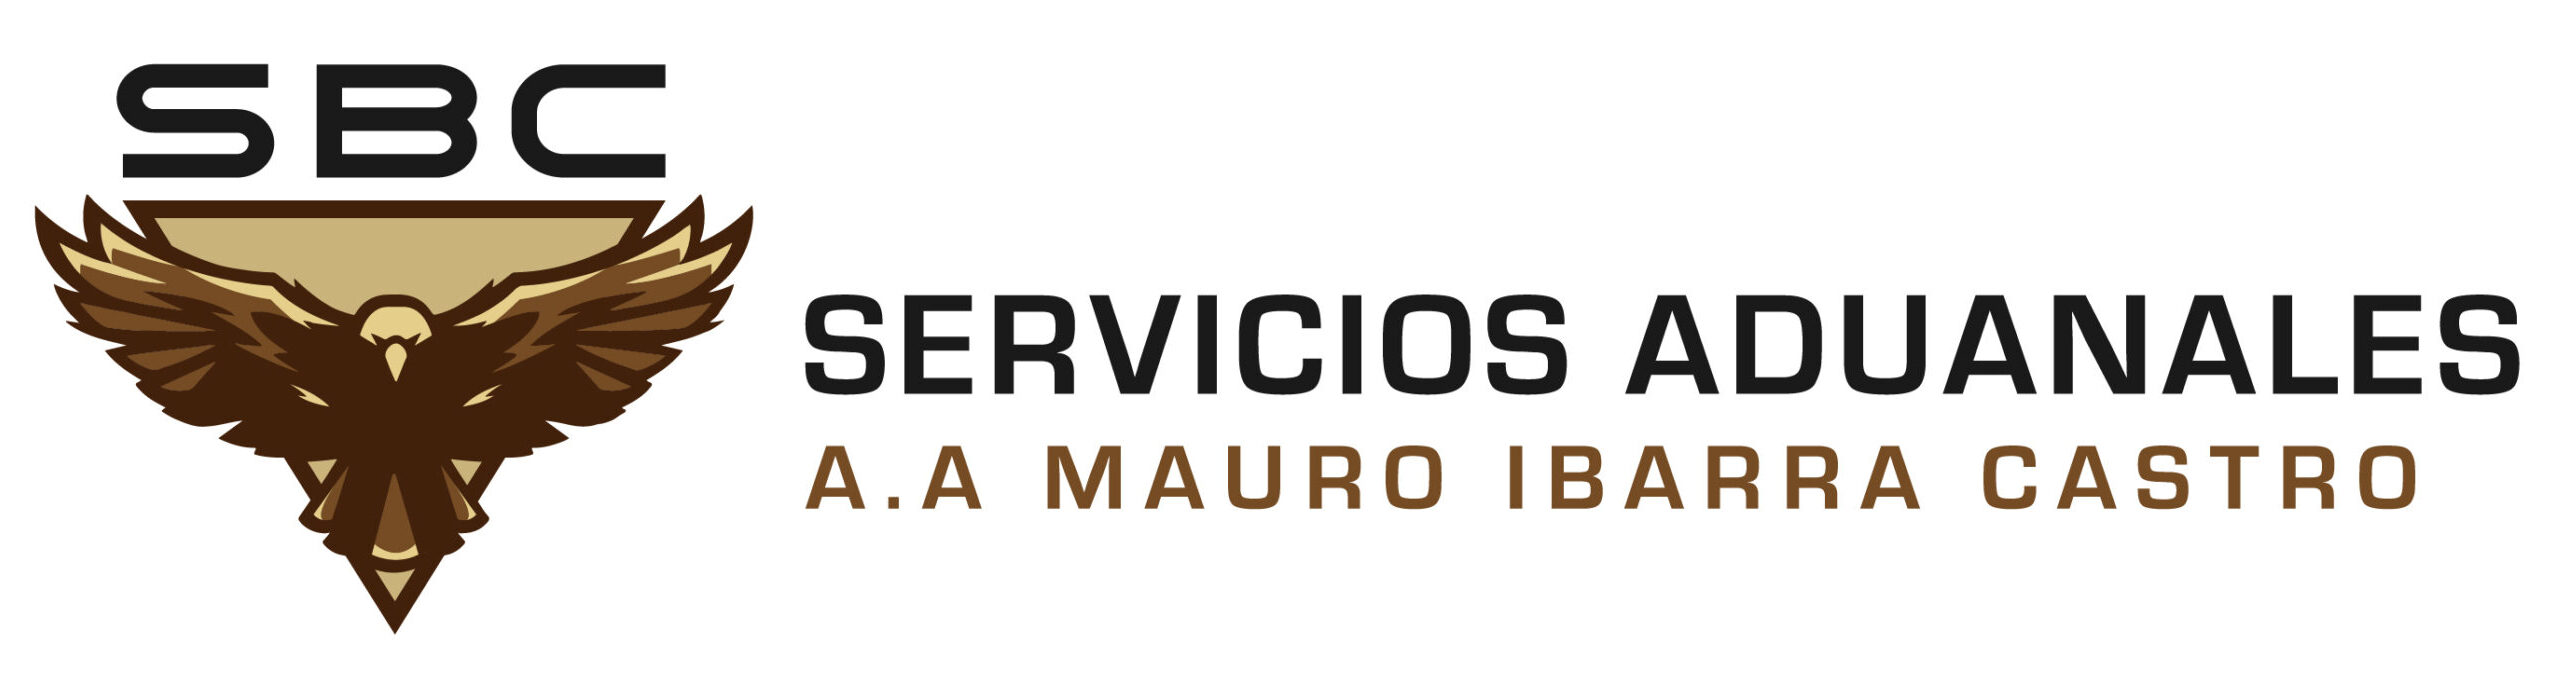 SBC Servicios Aduanales